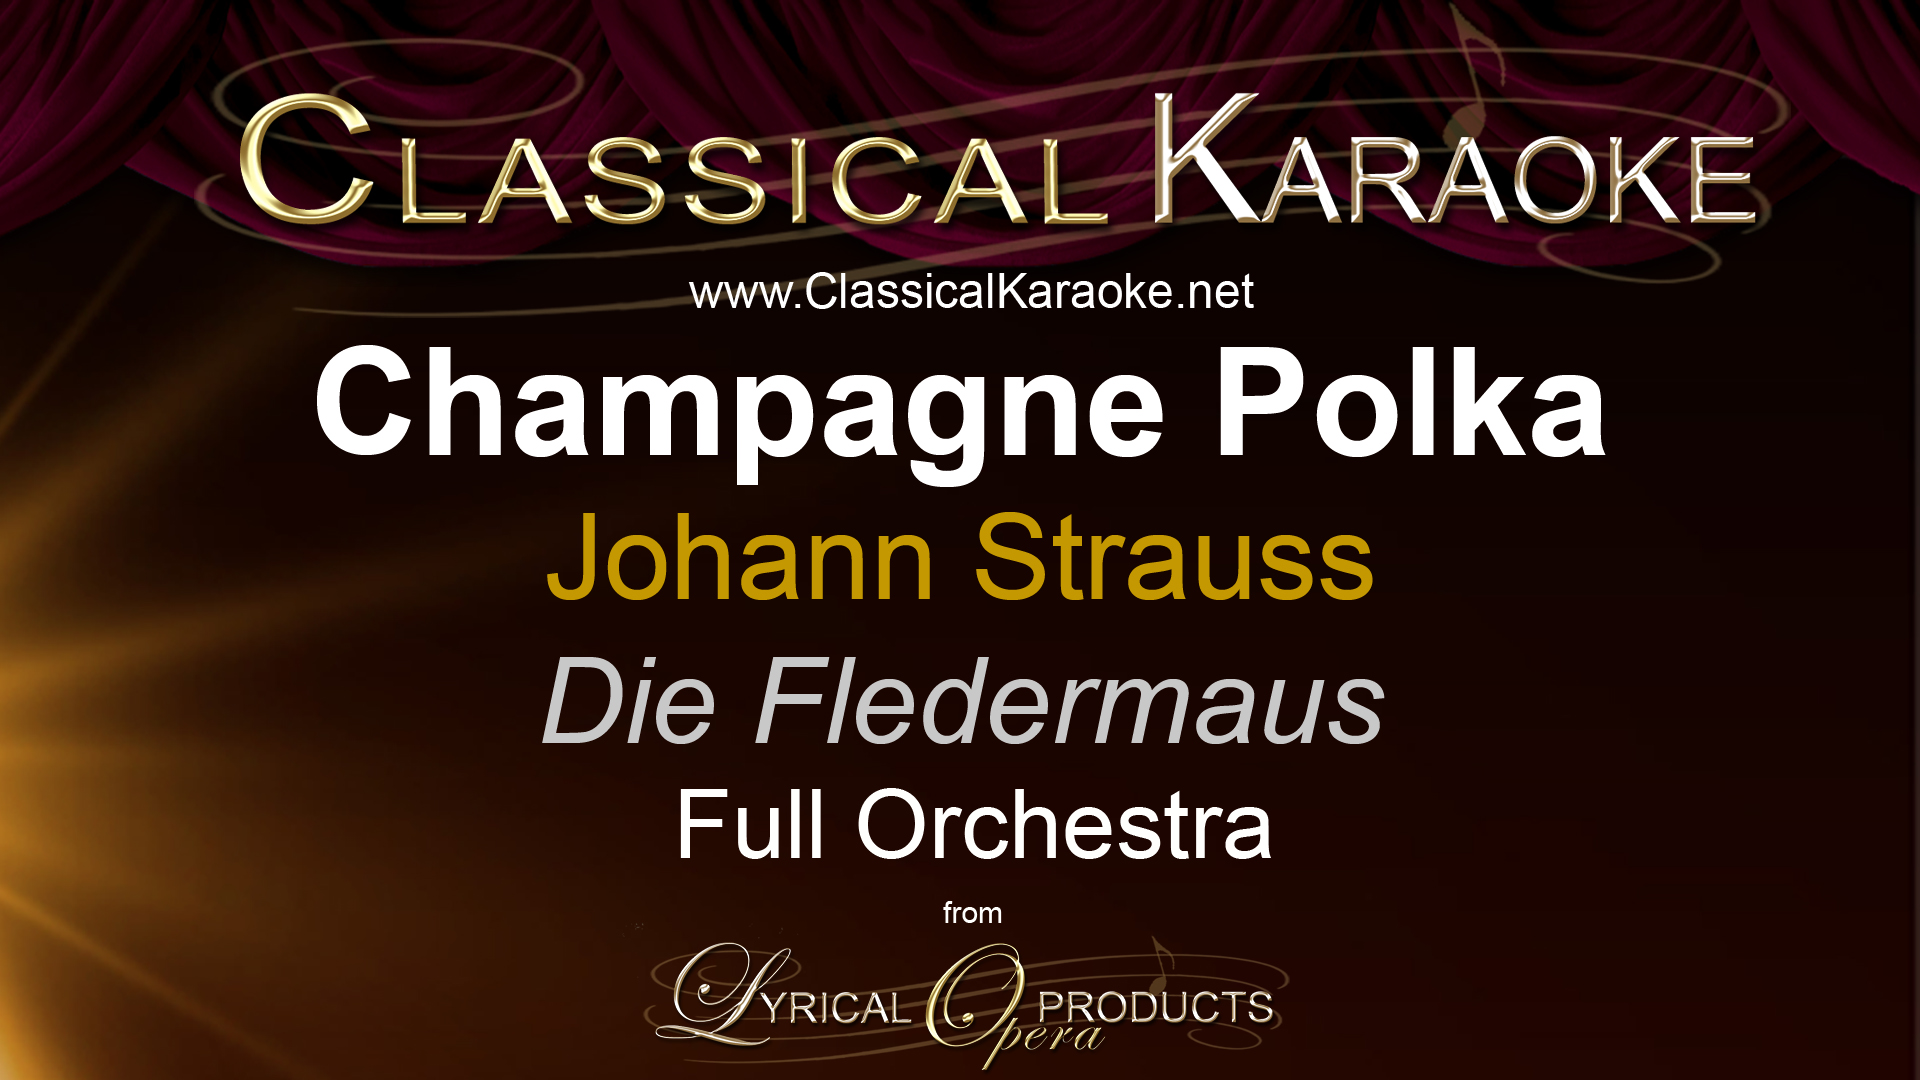 Champagne Polka (Im Feuerstrom der Reben), from Die Fledermaus, by Johann Strauss, Full Orchestral Accompaniment (karaoke) track